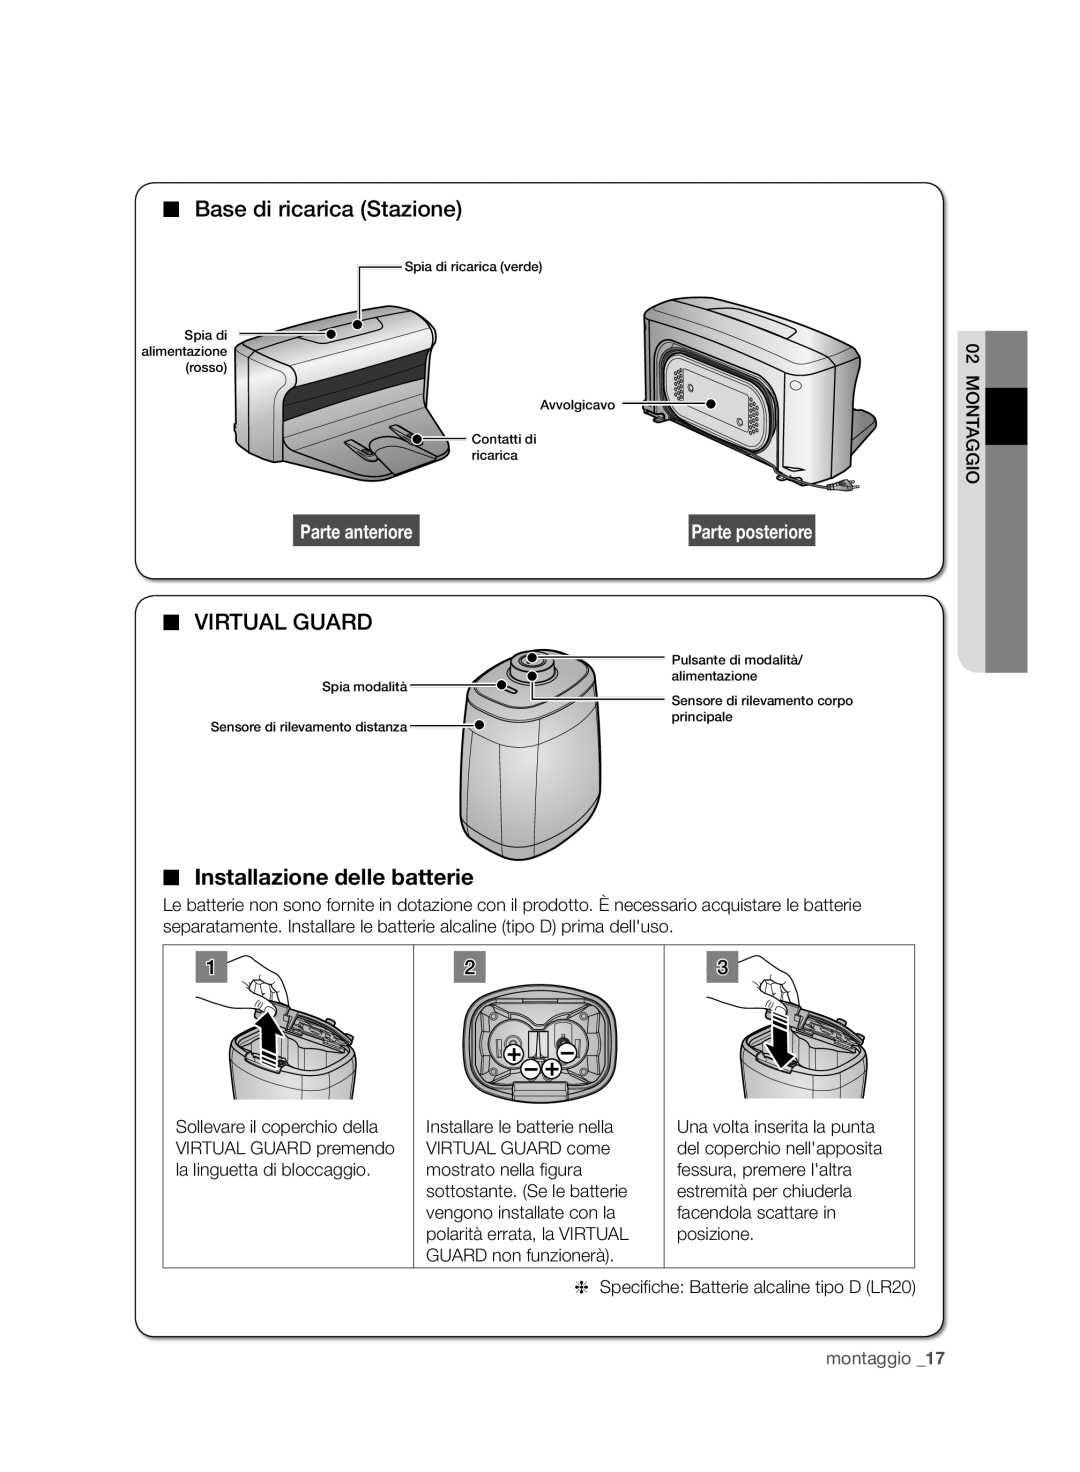 Samsung VCR8950L3B/XEG Base di ricarica Stazione, Virtual Guard, Installazione delle batterie, Parte anteriore, montaggio 